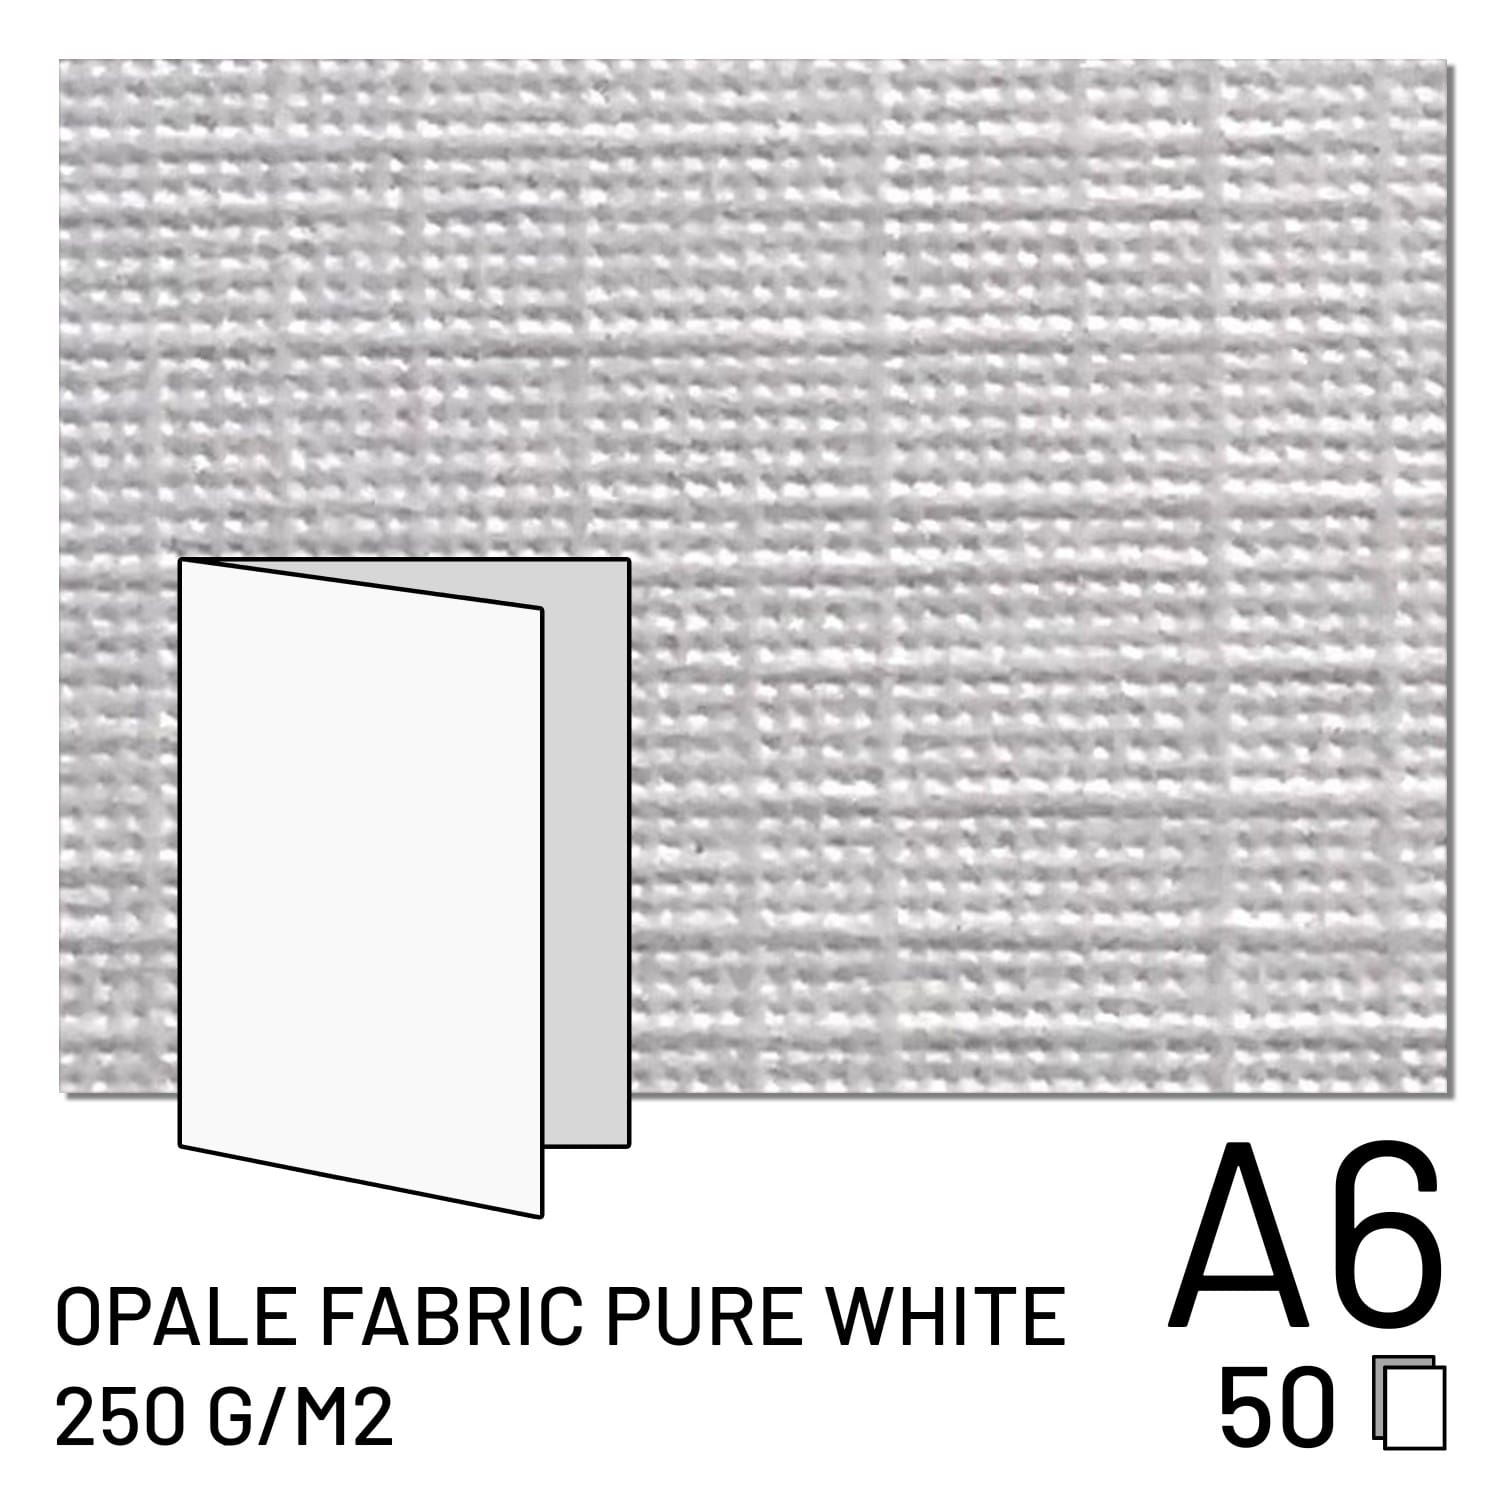 Papier FUJI Opale Fabric Pure White 250g A5 plié / A6 2 volets (50 feuilles) (70100148089)